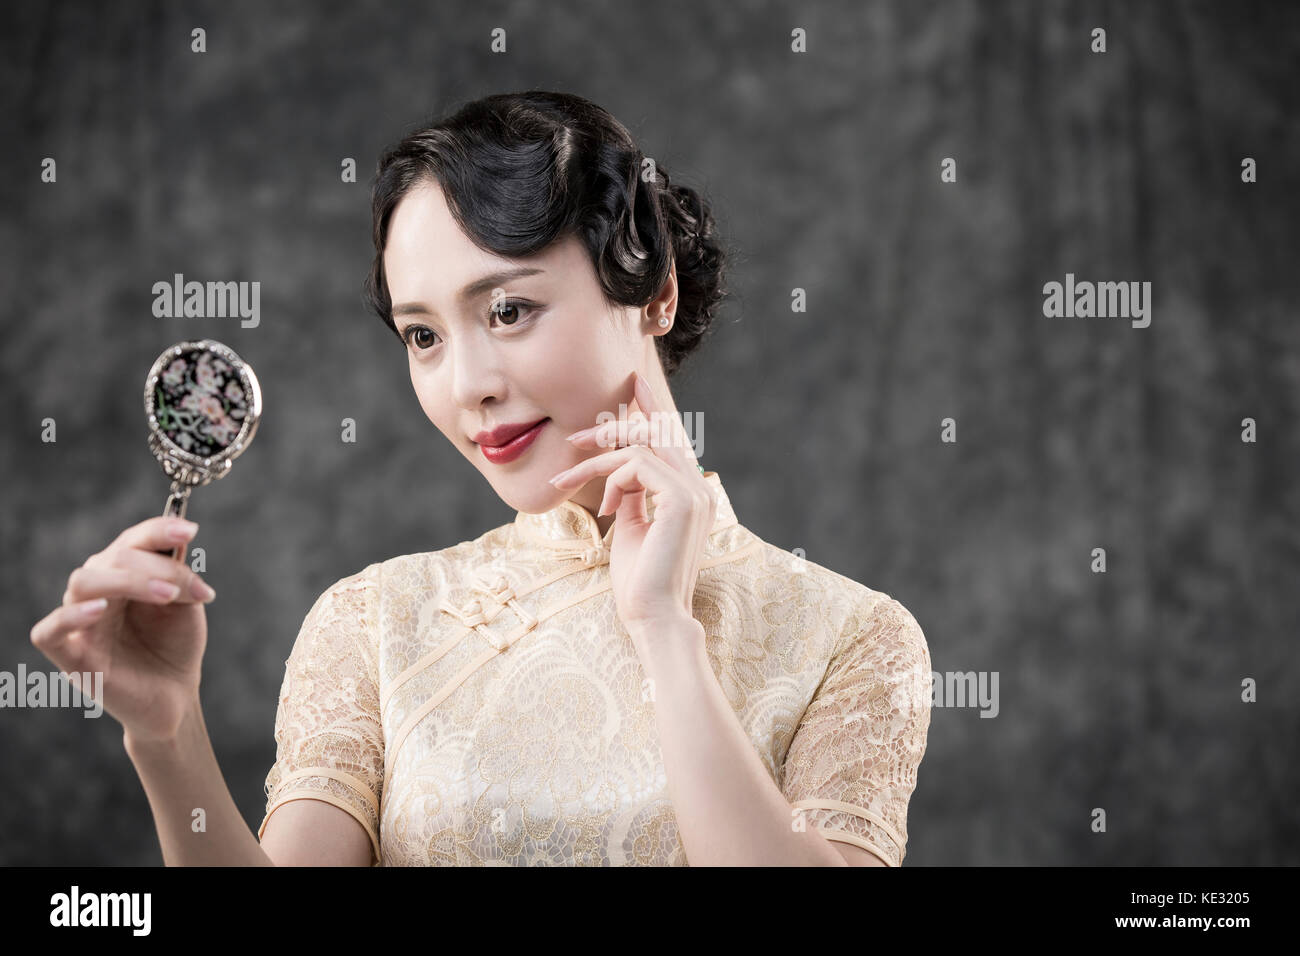 Retrato de joven mujer sonriente en estilo retro ropa oriental posando con espejo Foto de stock